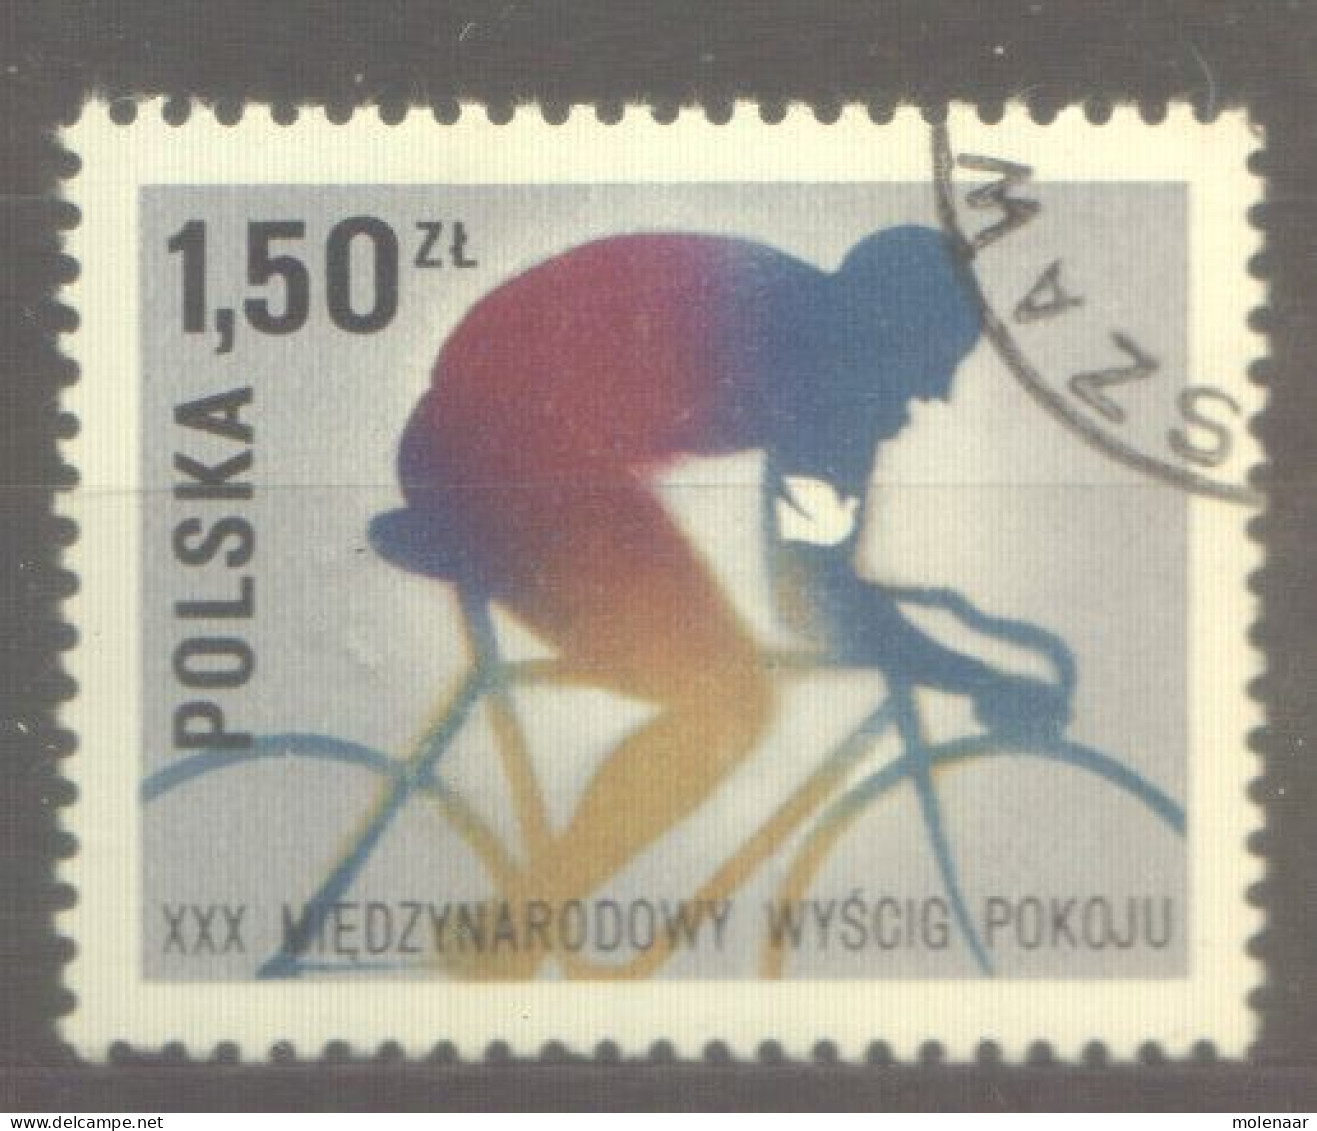 Postzegels > Europa > Polen > 1944-.... Republiek > 1971-80 > Gebruikt No. 2501 (24144) - Usados